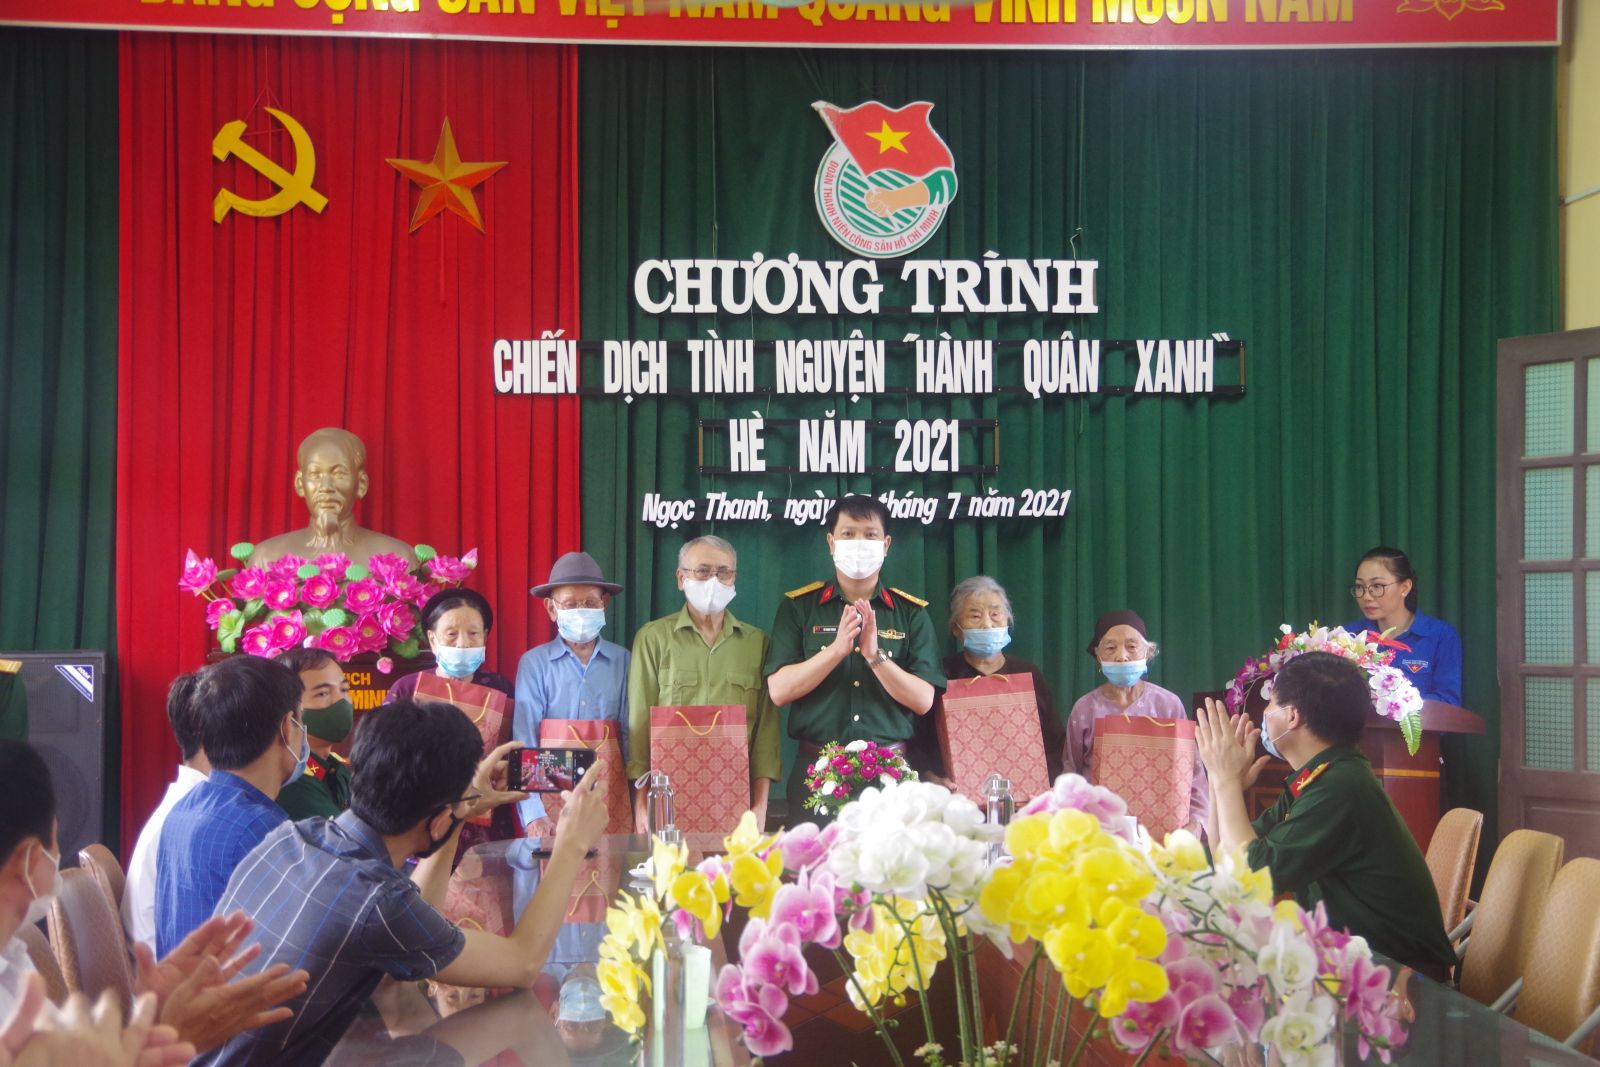 Đoàn Thanh niên Bộ Chỉ huy Quân sự tỉnh phối hợp với Đoàn xã Ngọc Thanh tổ chức chiến dịch tình nguyện "Hành quân xanh"